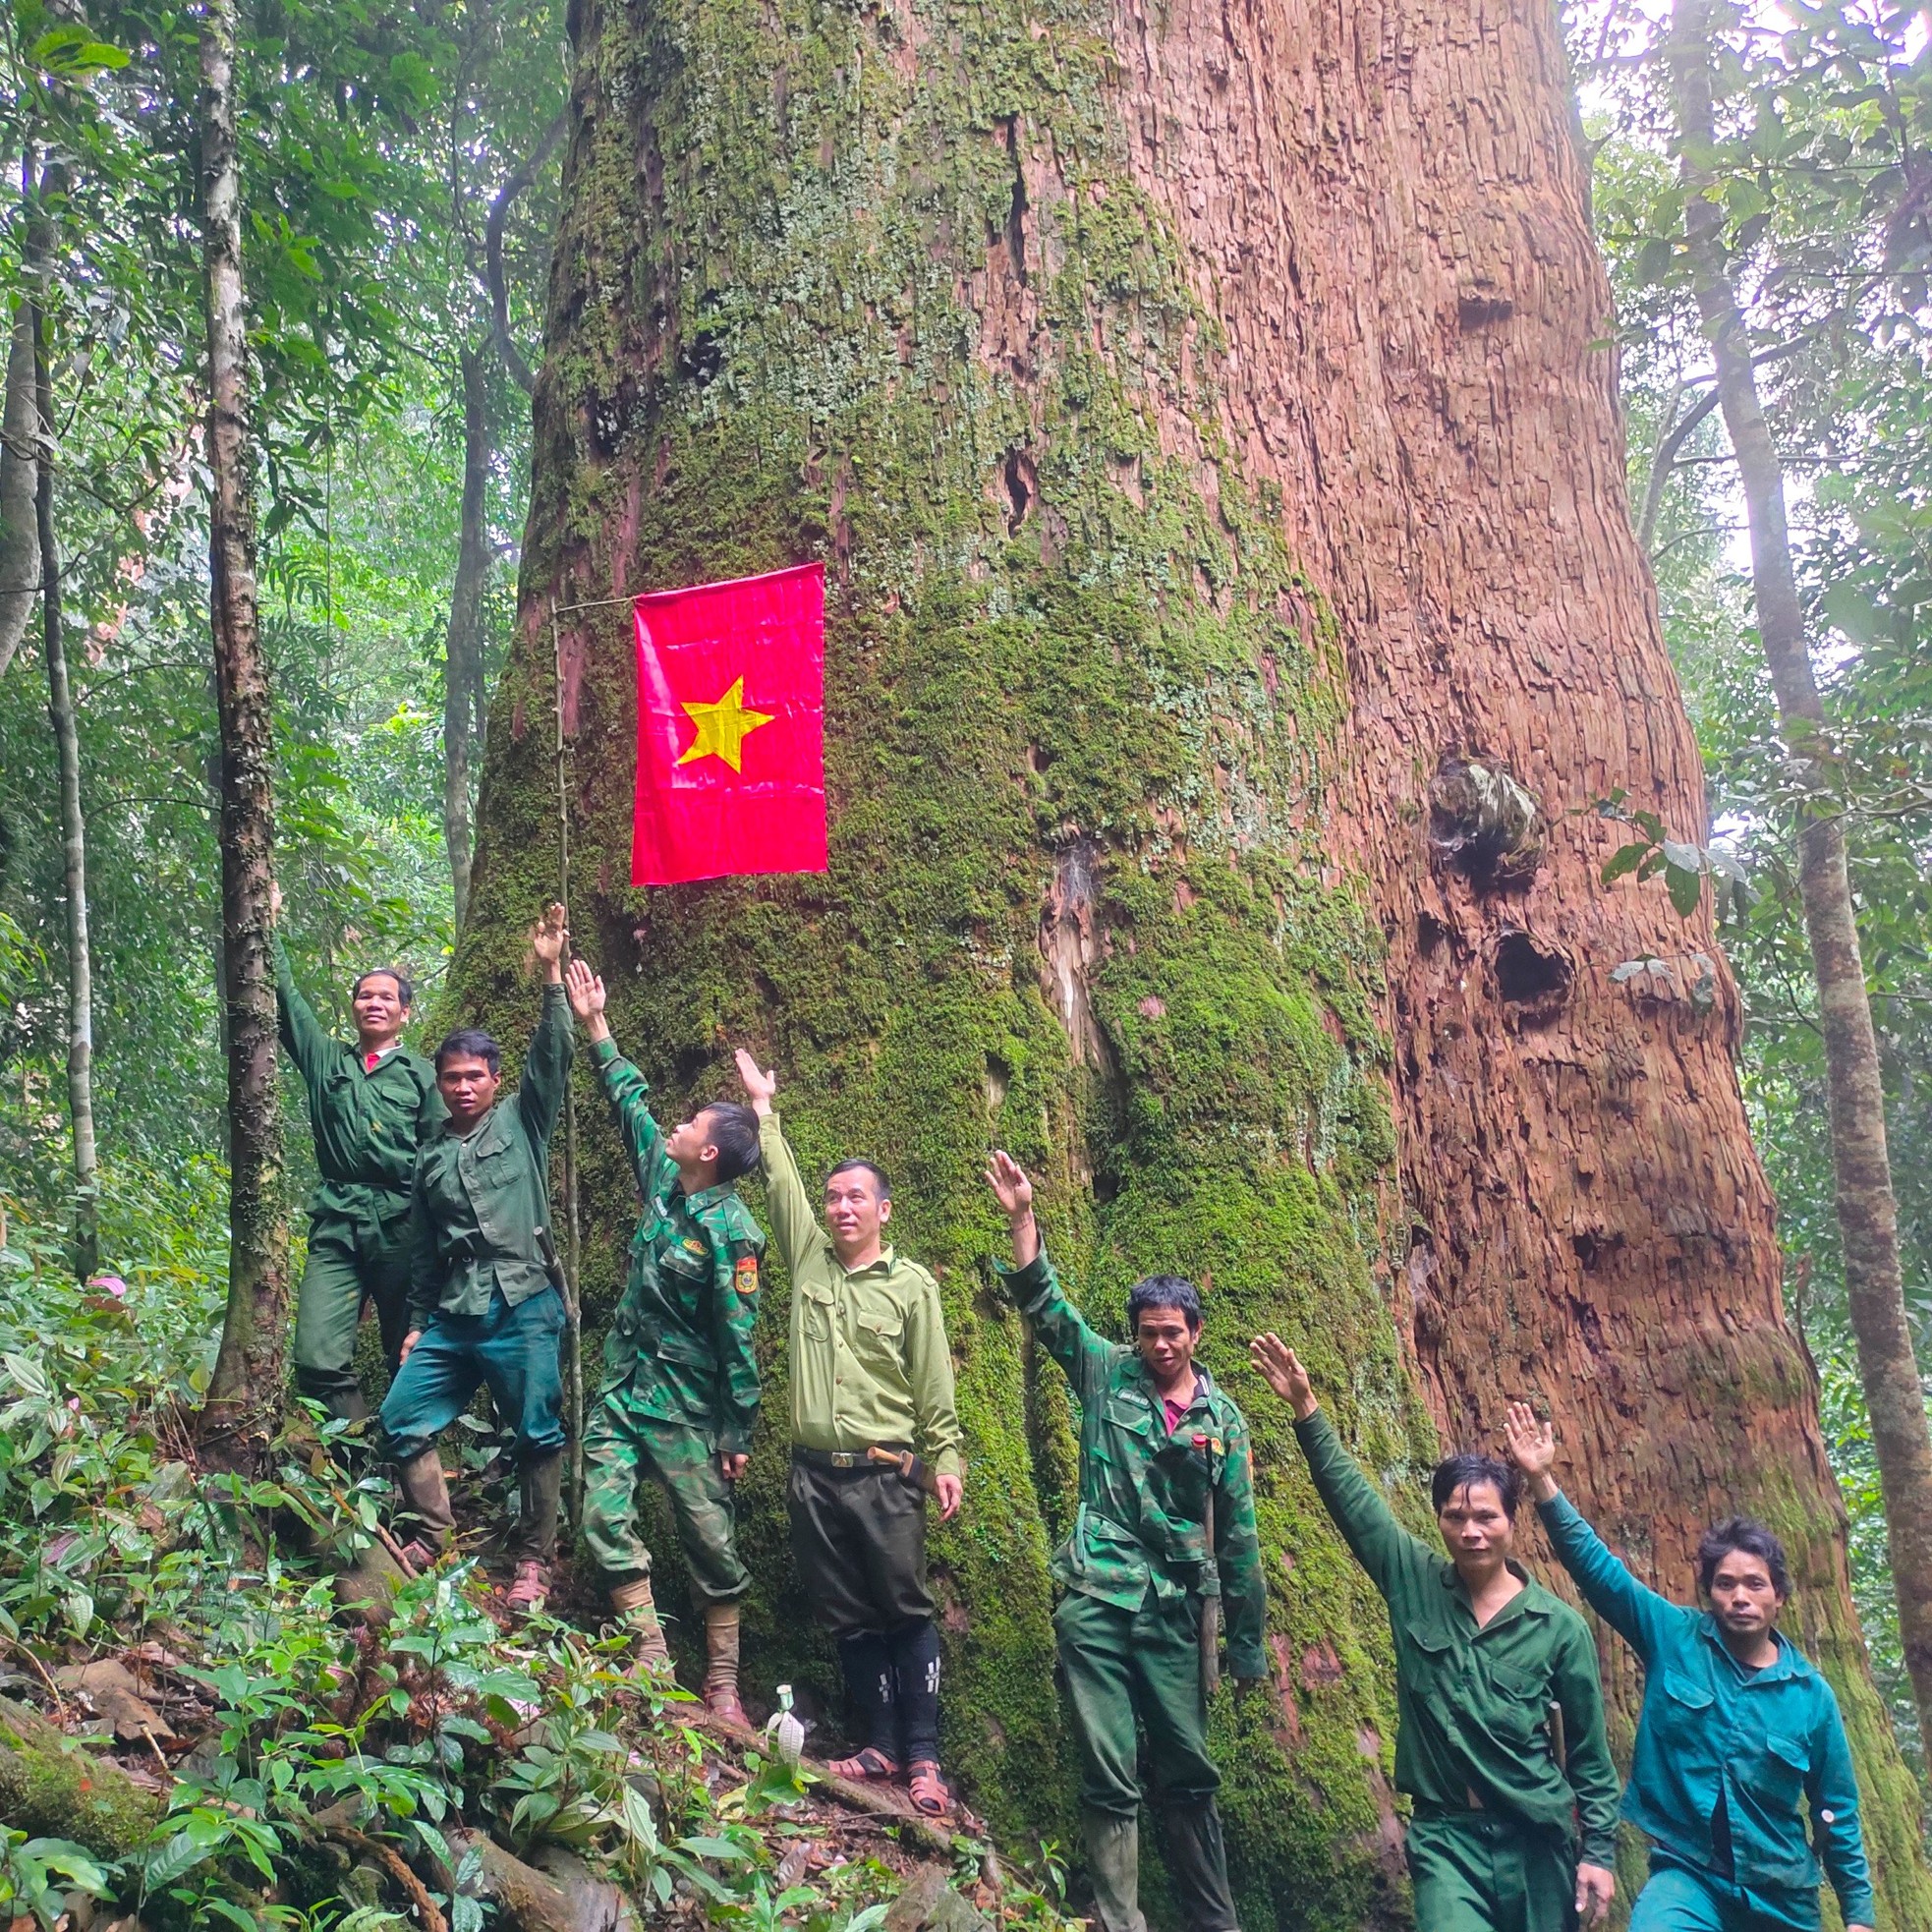 Ngắm cổ thụ Sa mu dầu hơn 2.000 tuổi trong lõi rừng già, được công nhận là cây di sản Việt Nam - Ảnh 3.